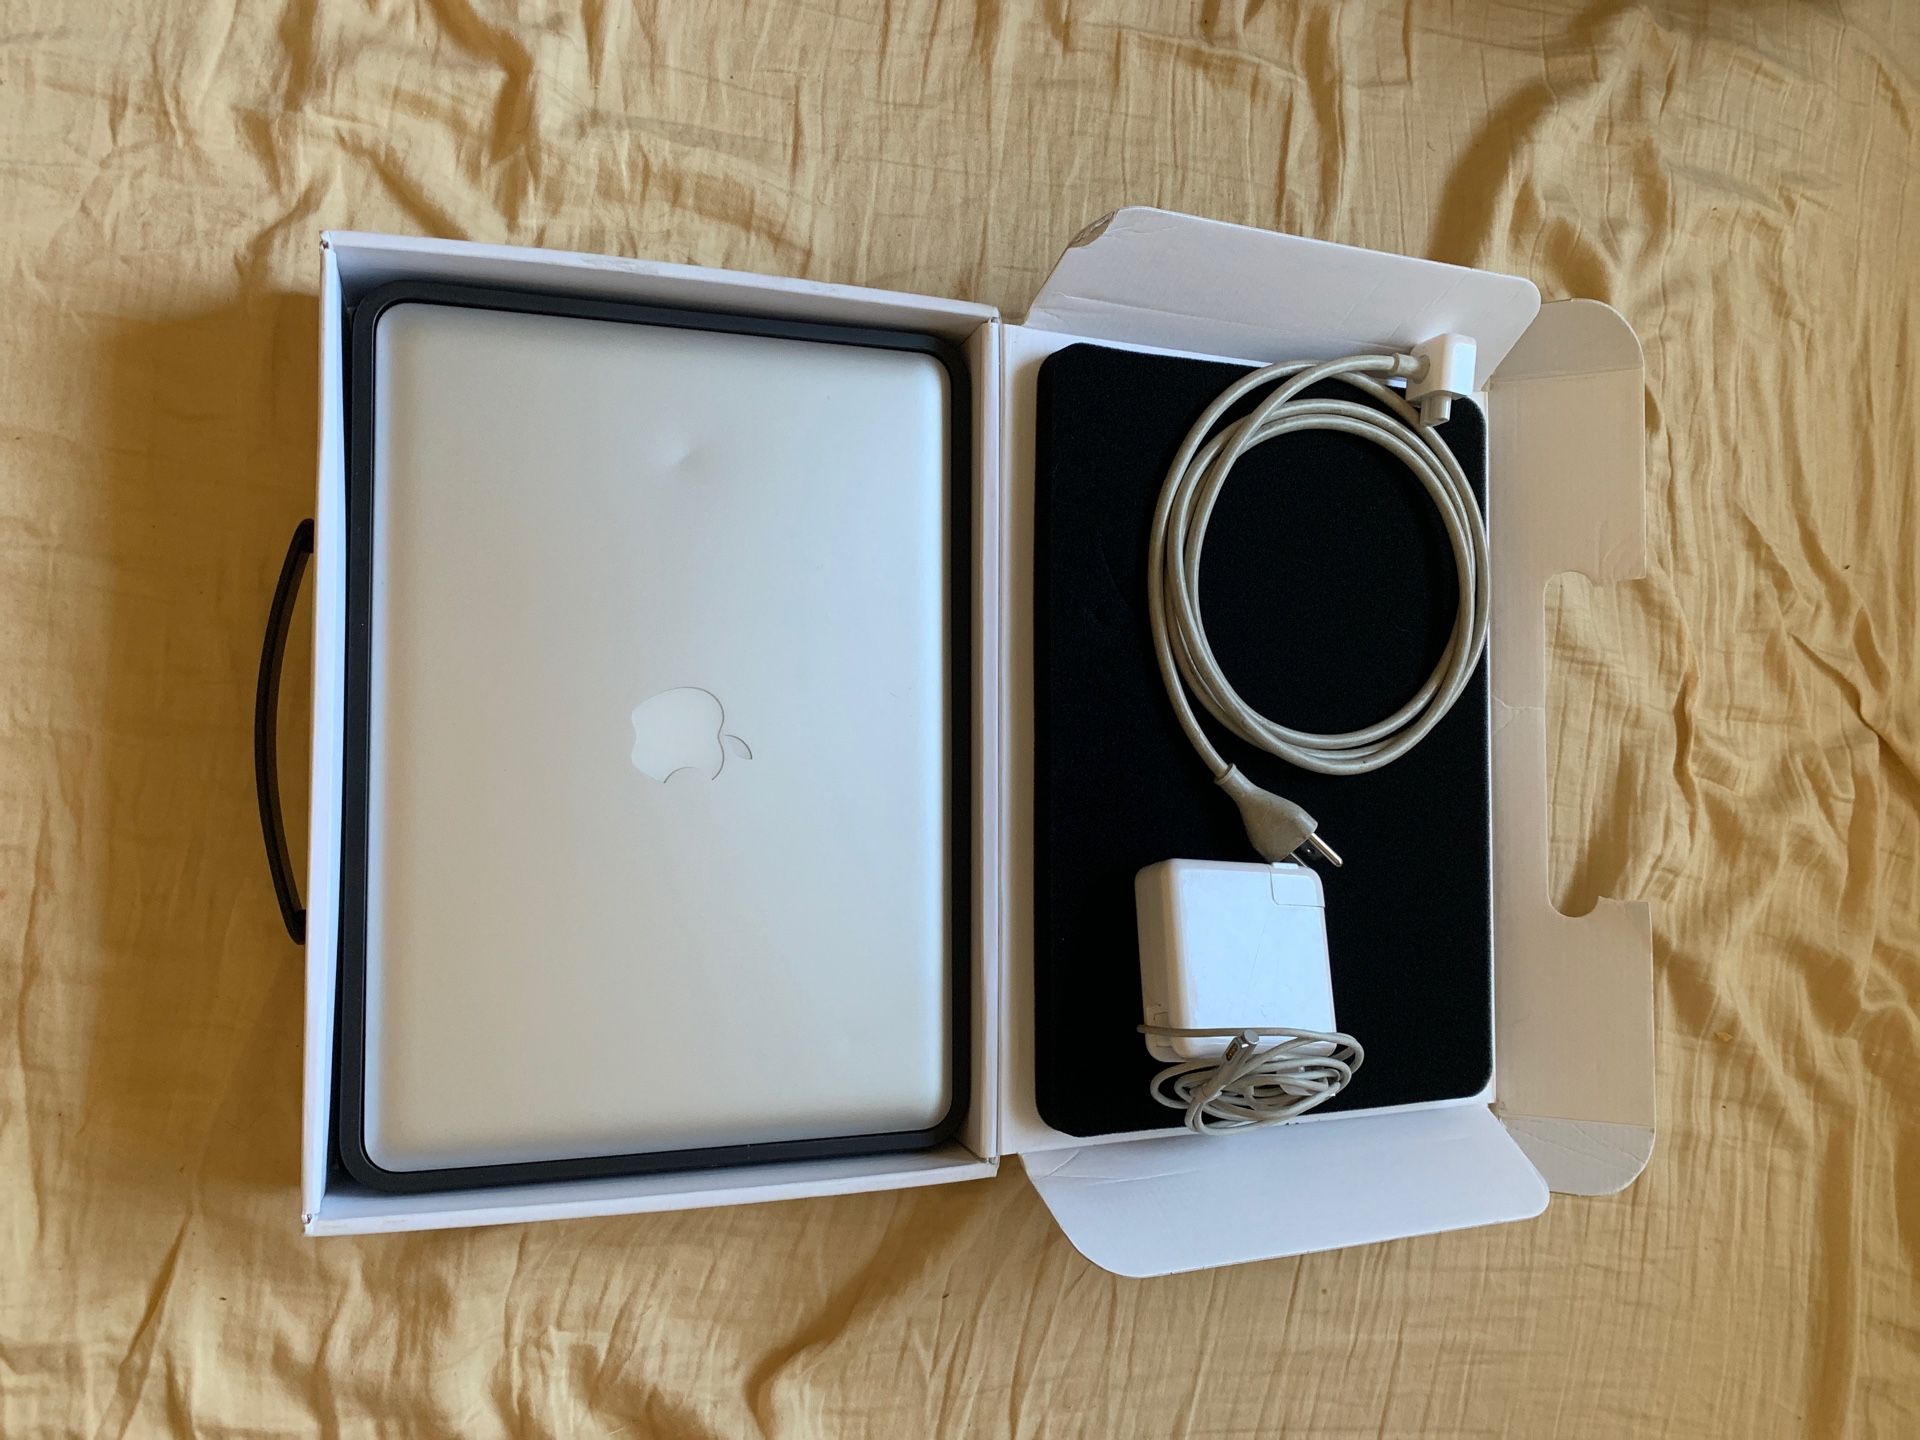 13 inch MacBook Pro